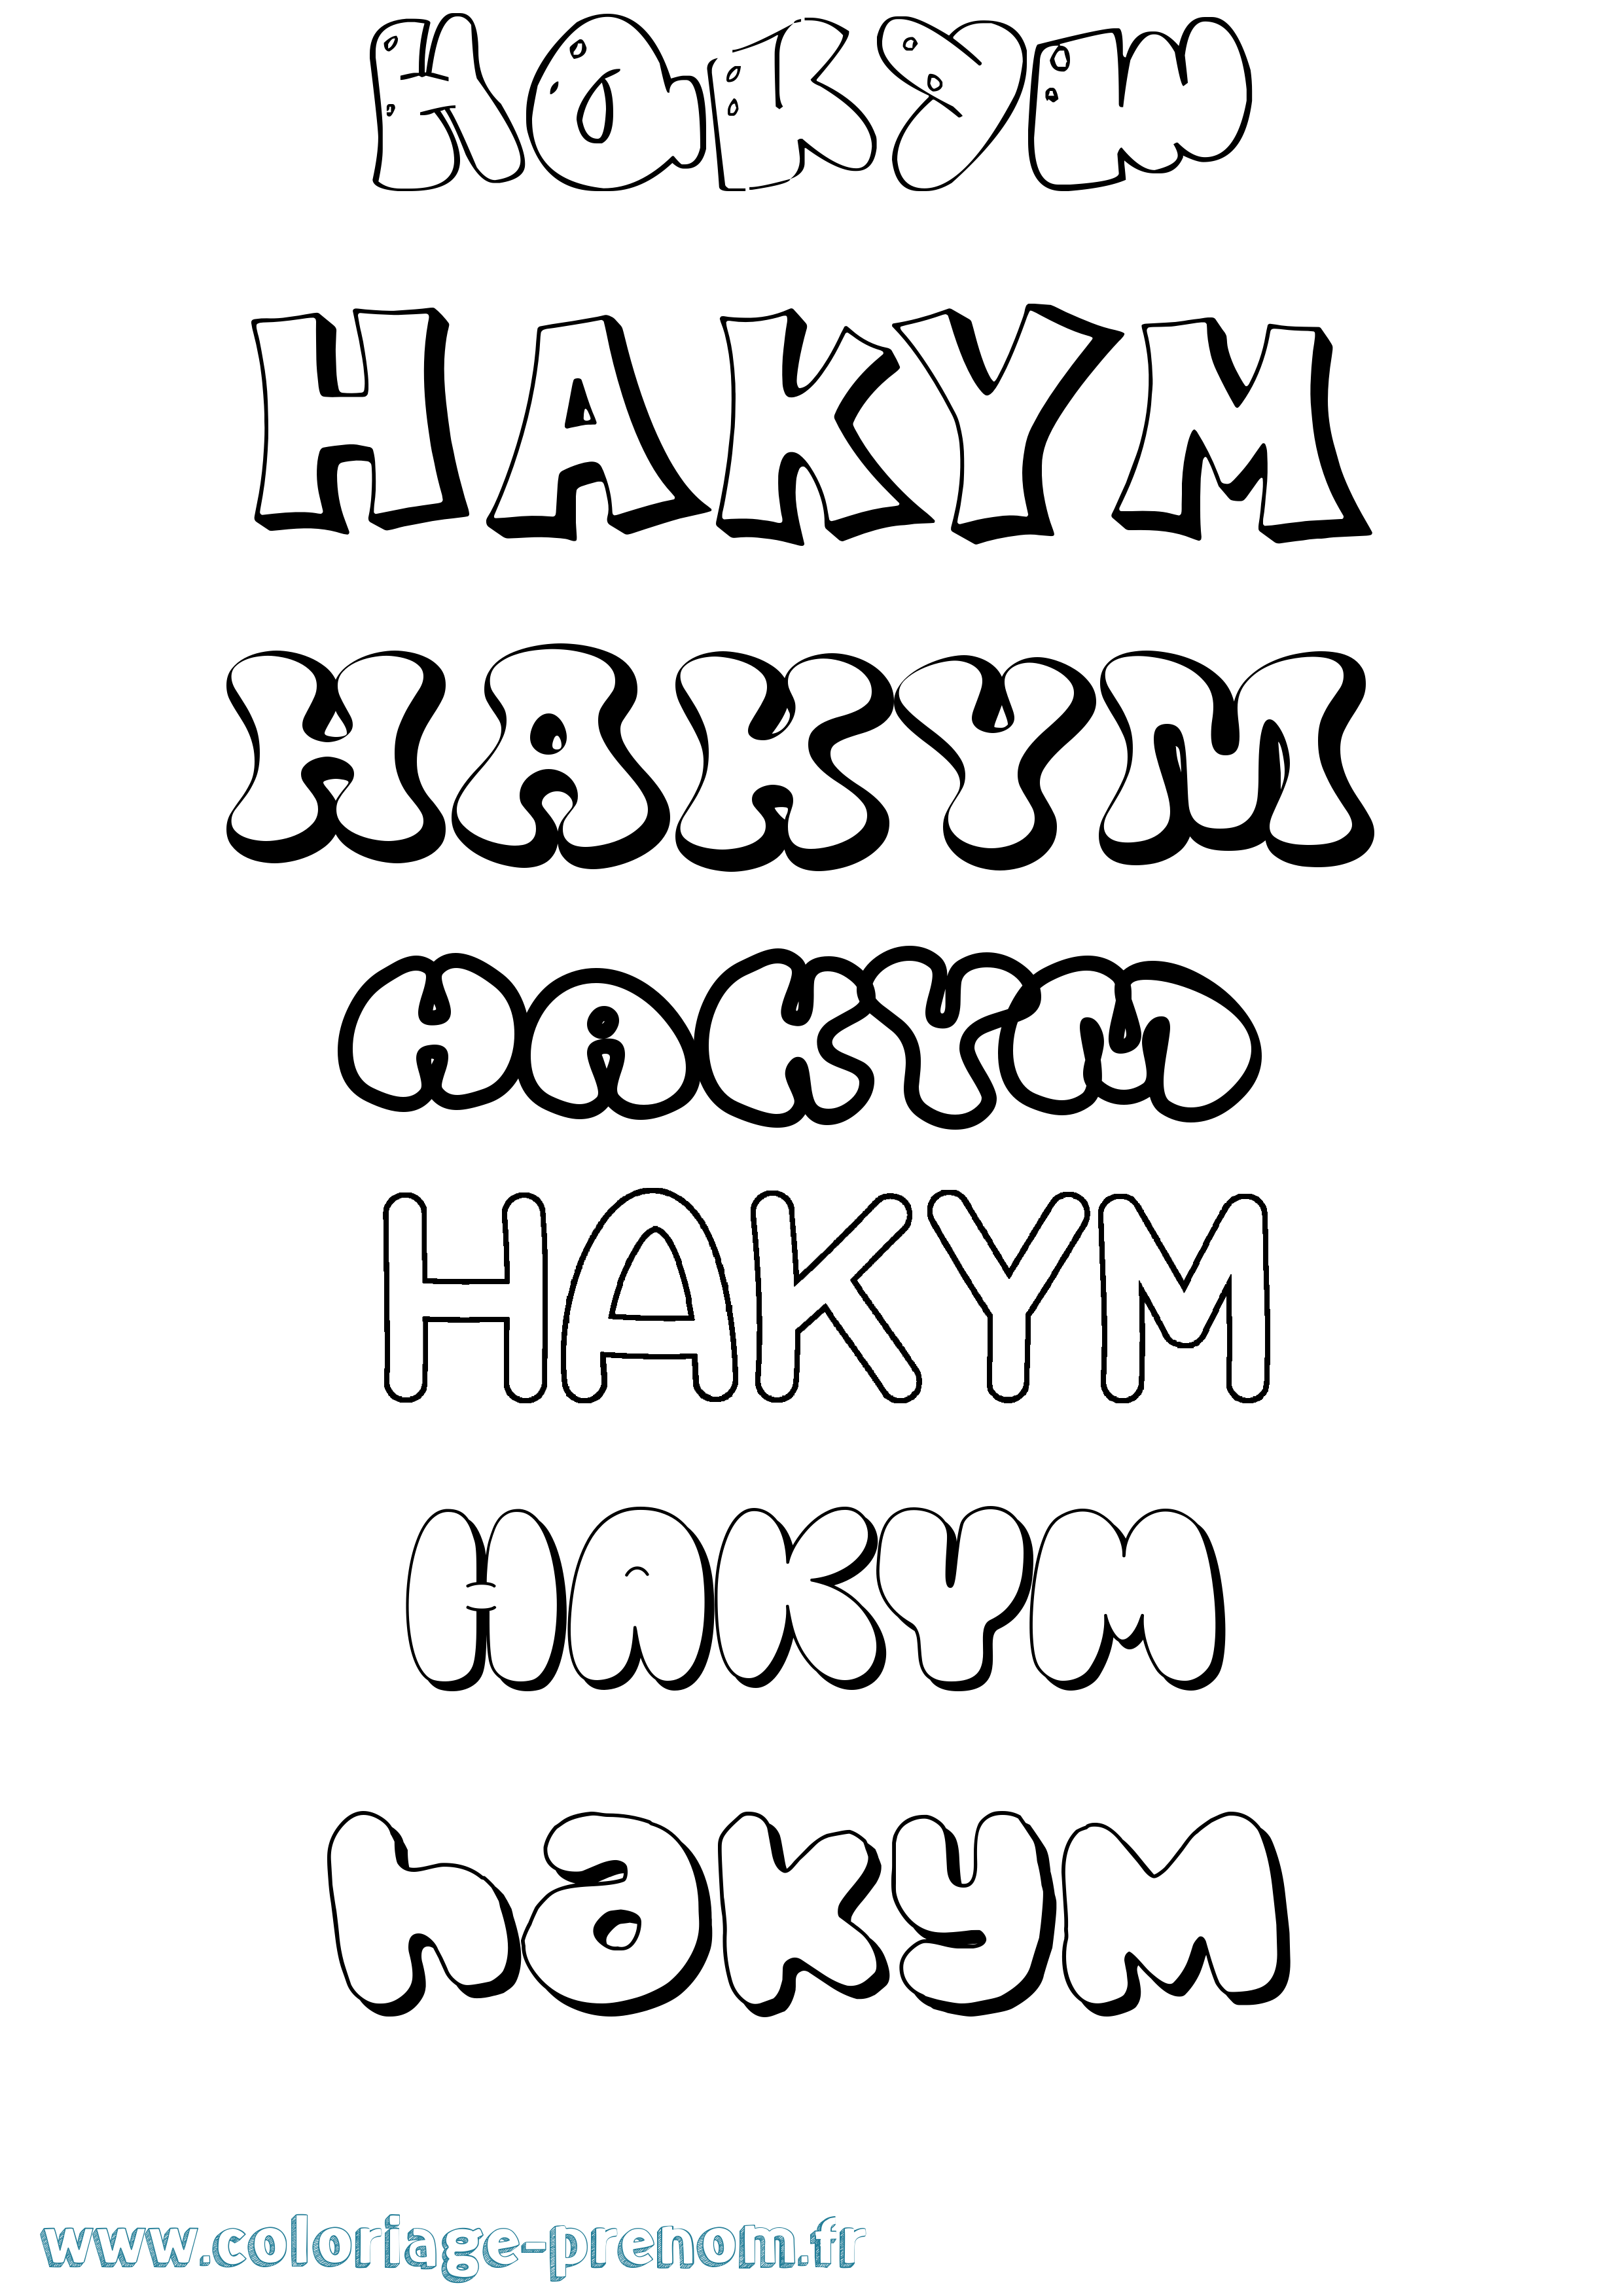 Coloriage prénom Hakym Bubble